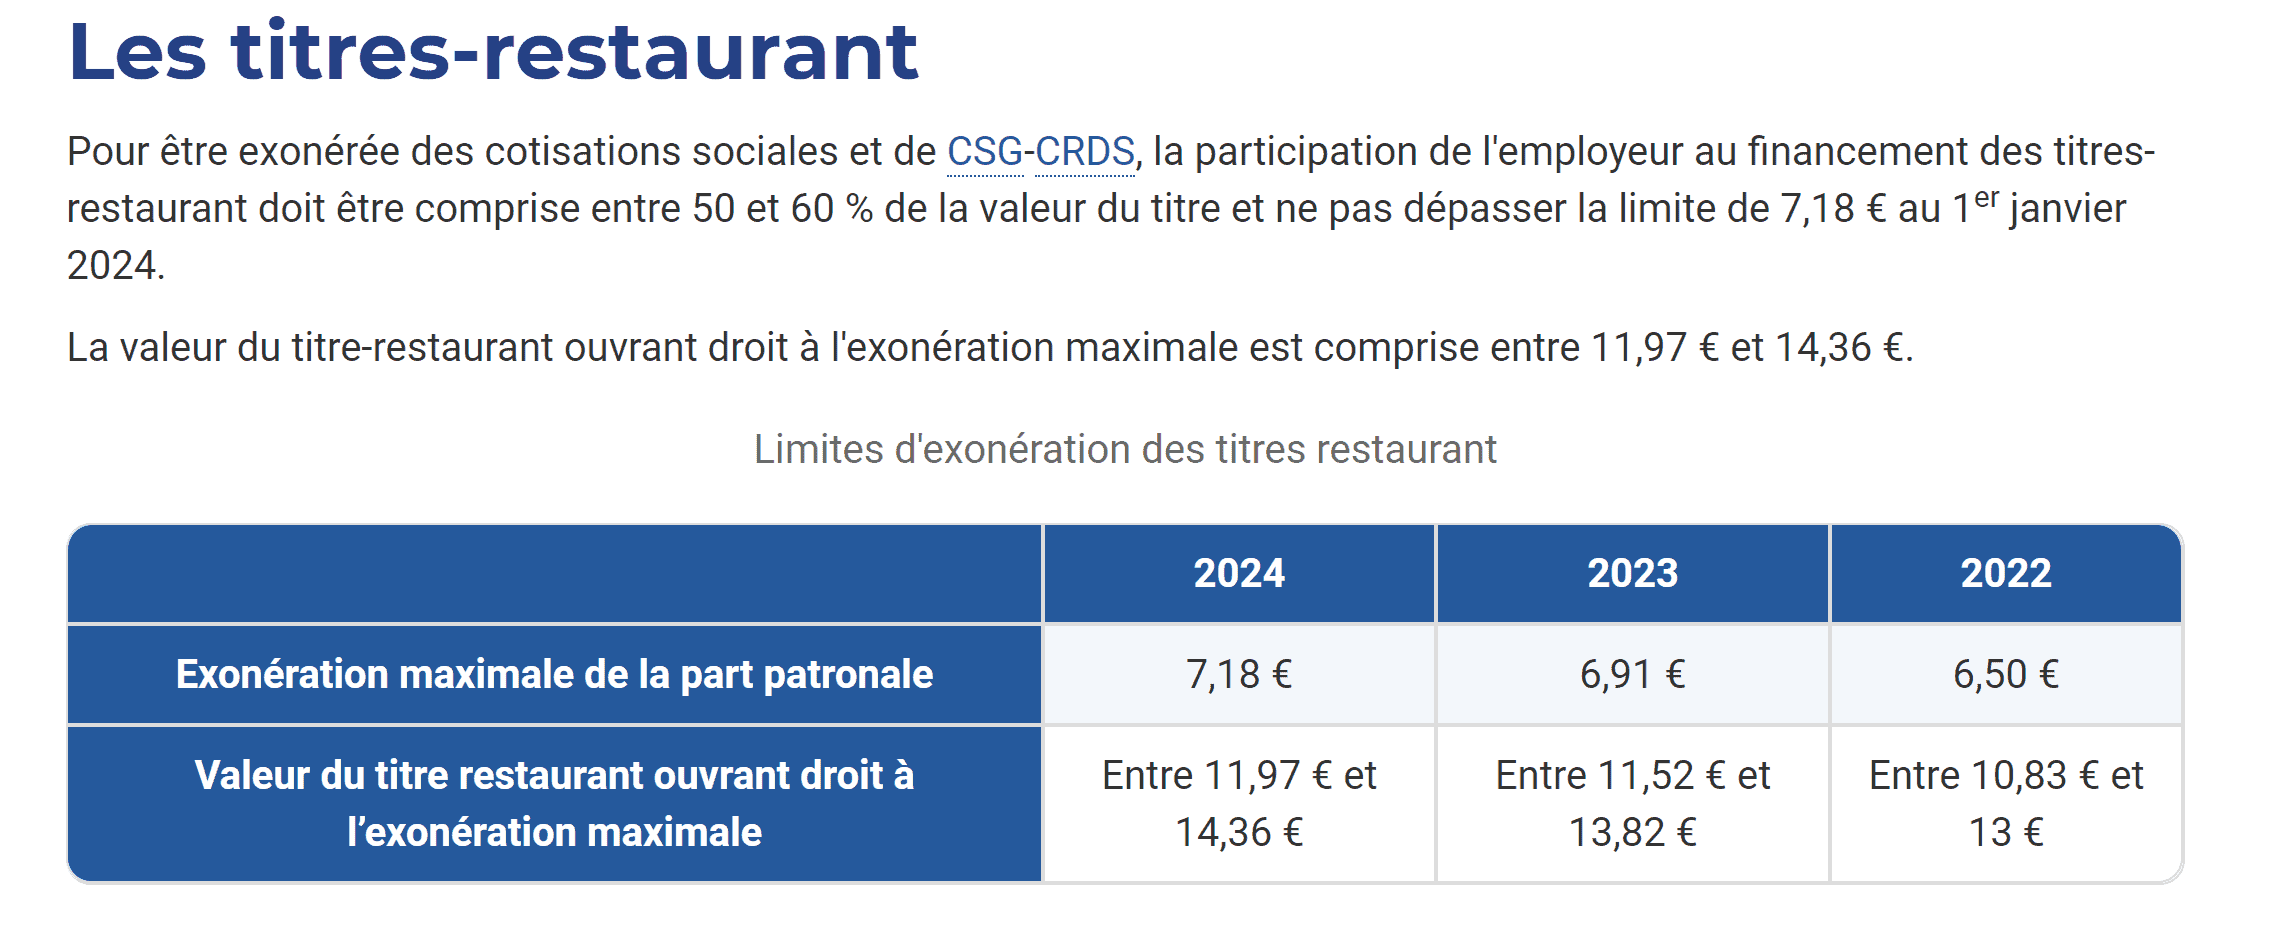 participation de l'employeur au financement des titres-restaurant 2024